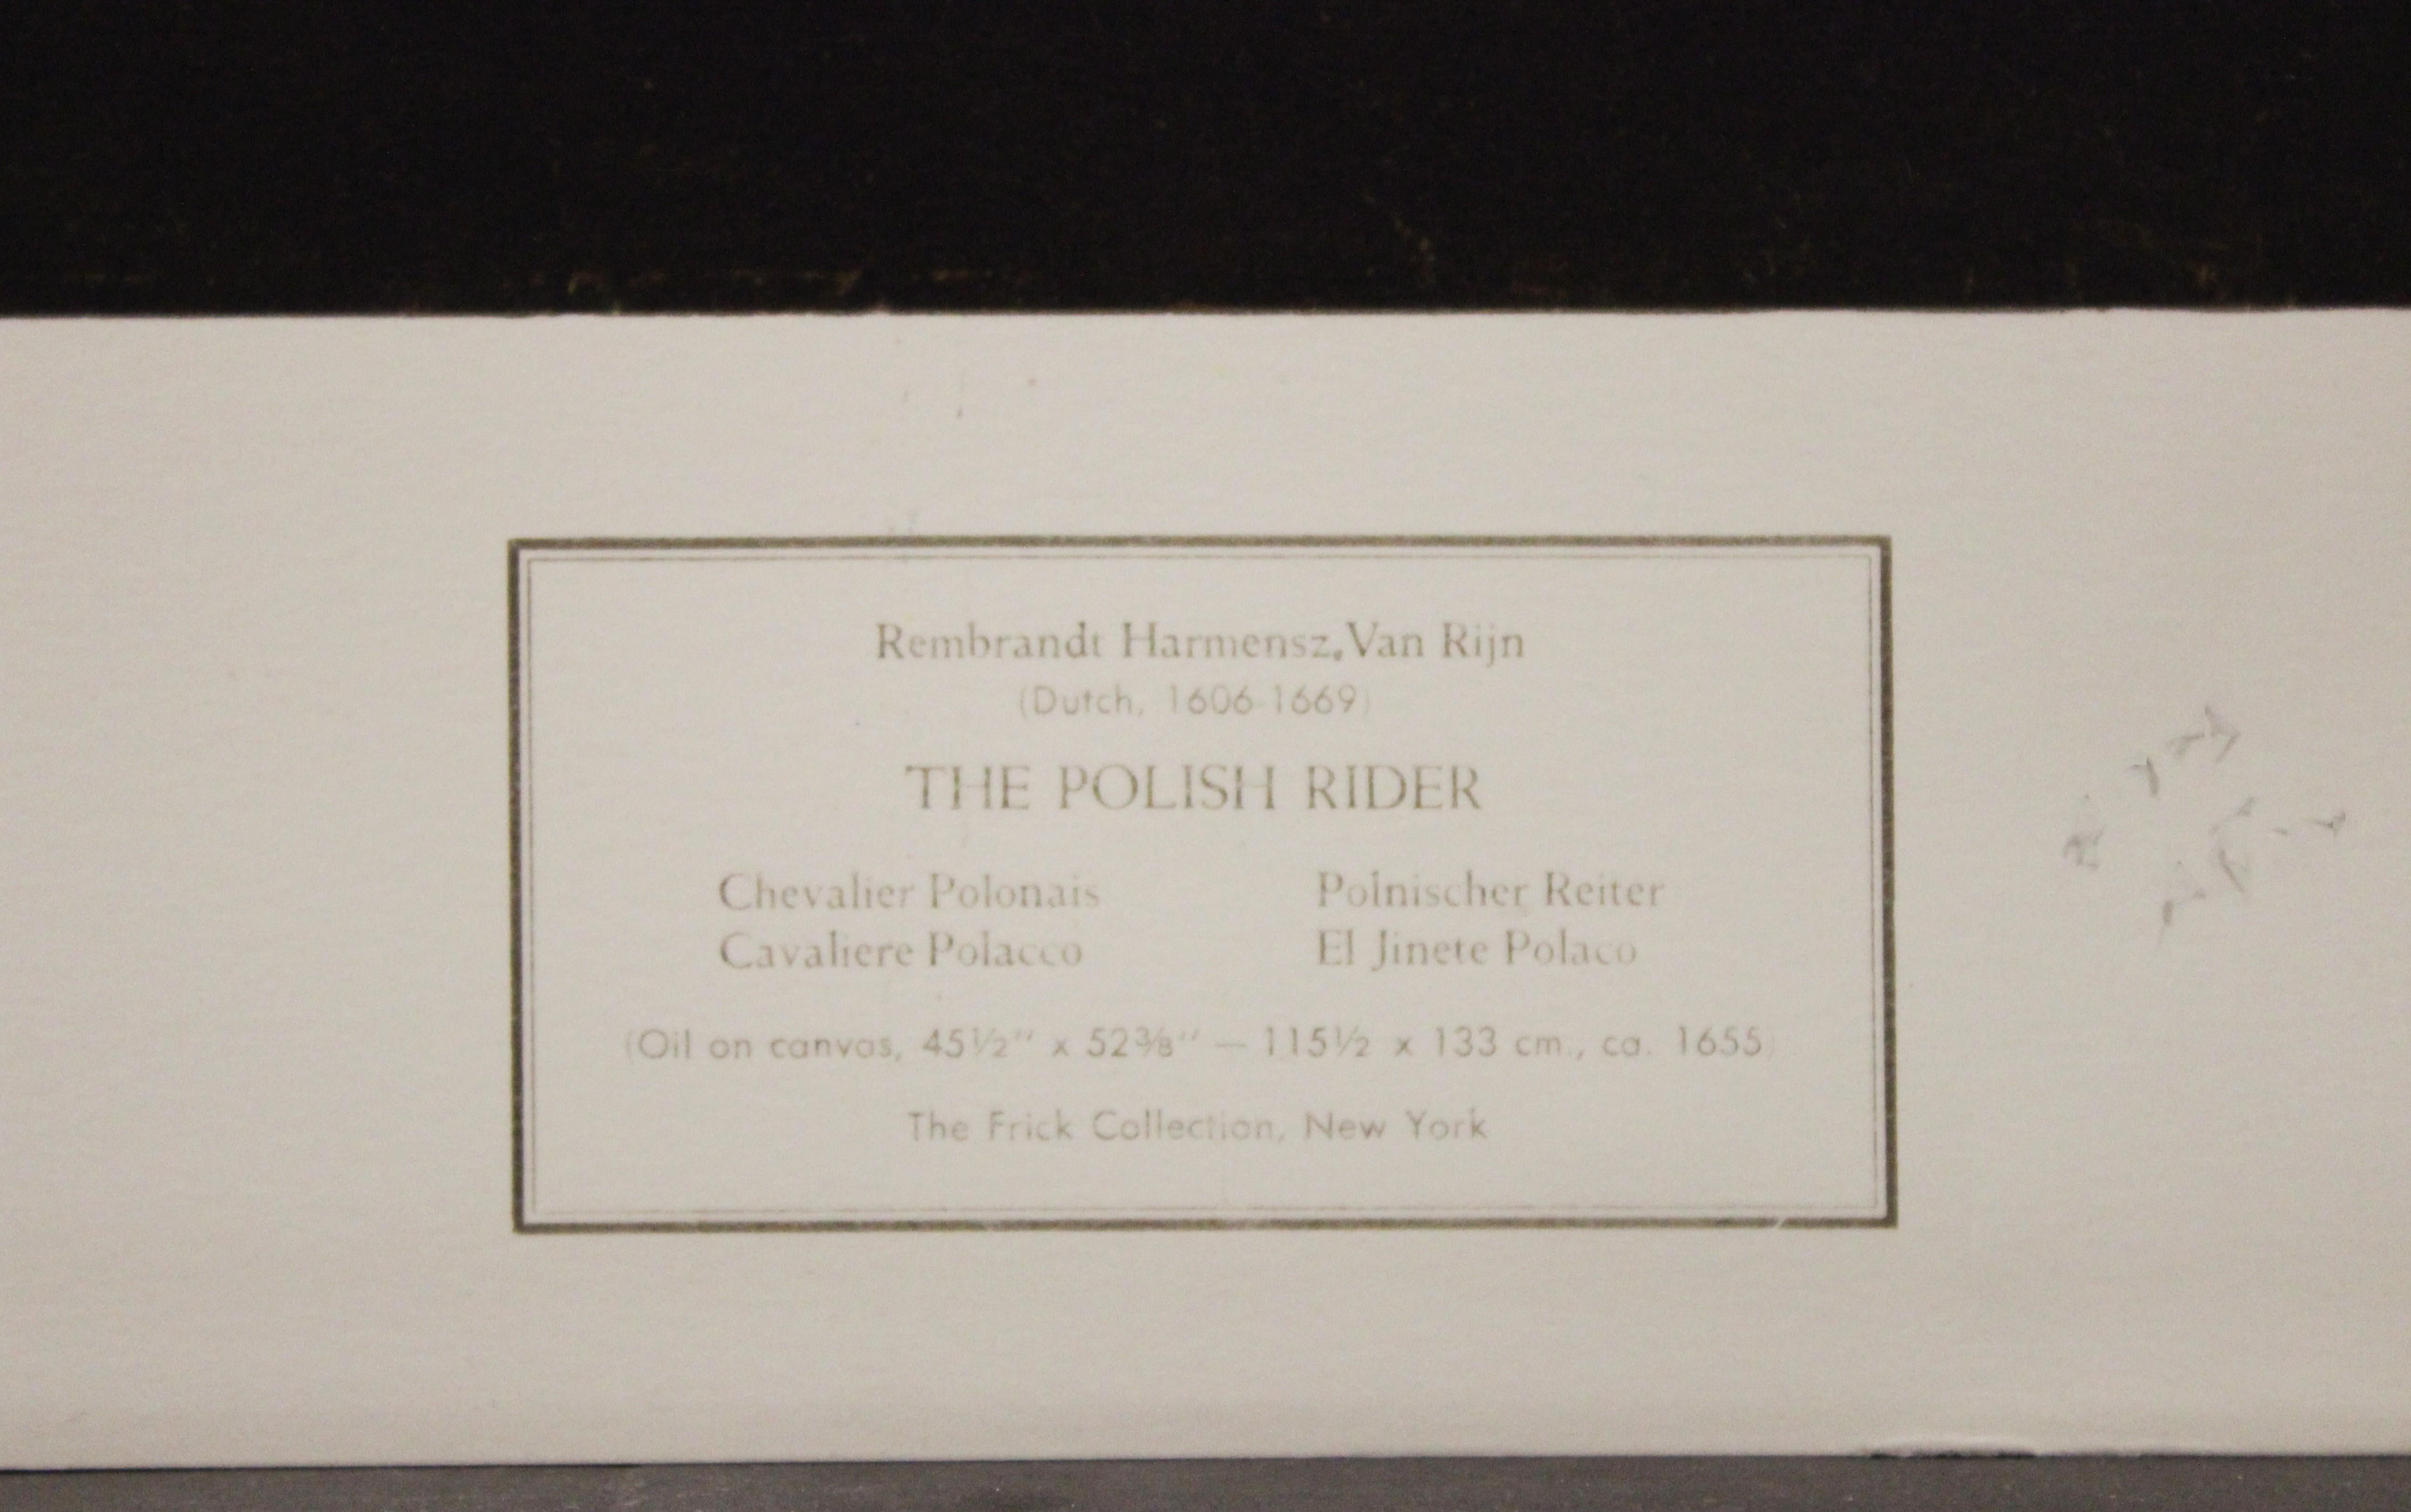 L'affiche d'équitation polonaise. New York Graphic Society (Société graphique de New York)  - Print de (After) Rembrandt van Rijn 